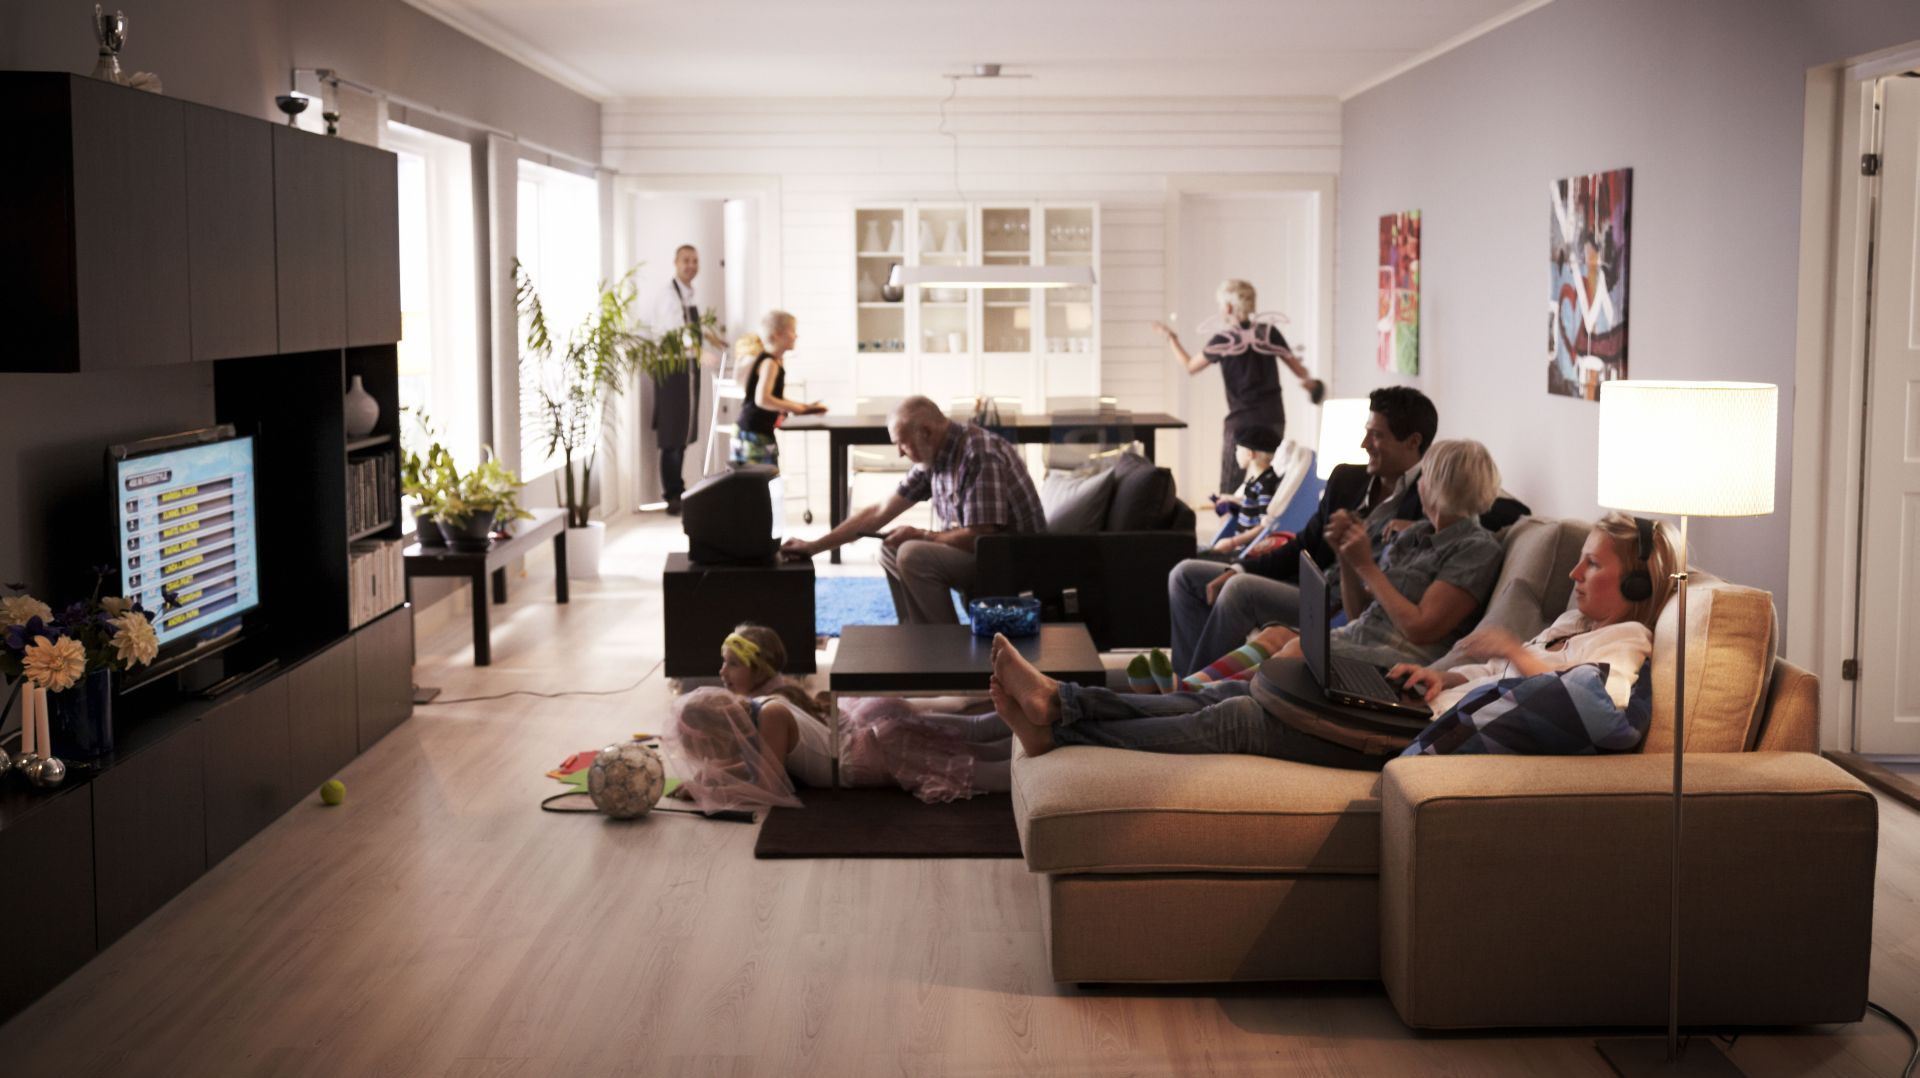 Sofa KIVIK to idealne rozwiązanie do salonu dla dużej rodziny.
Fot. IKEA